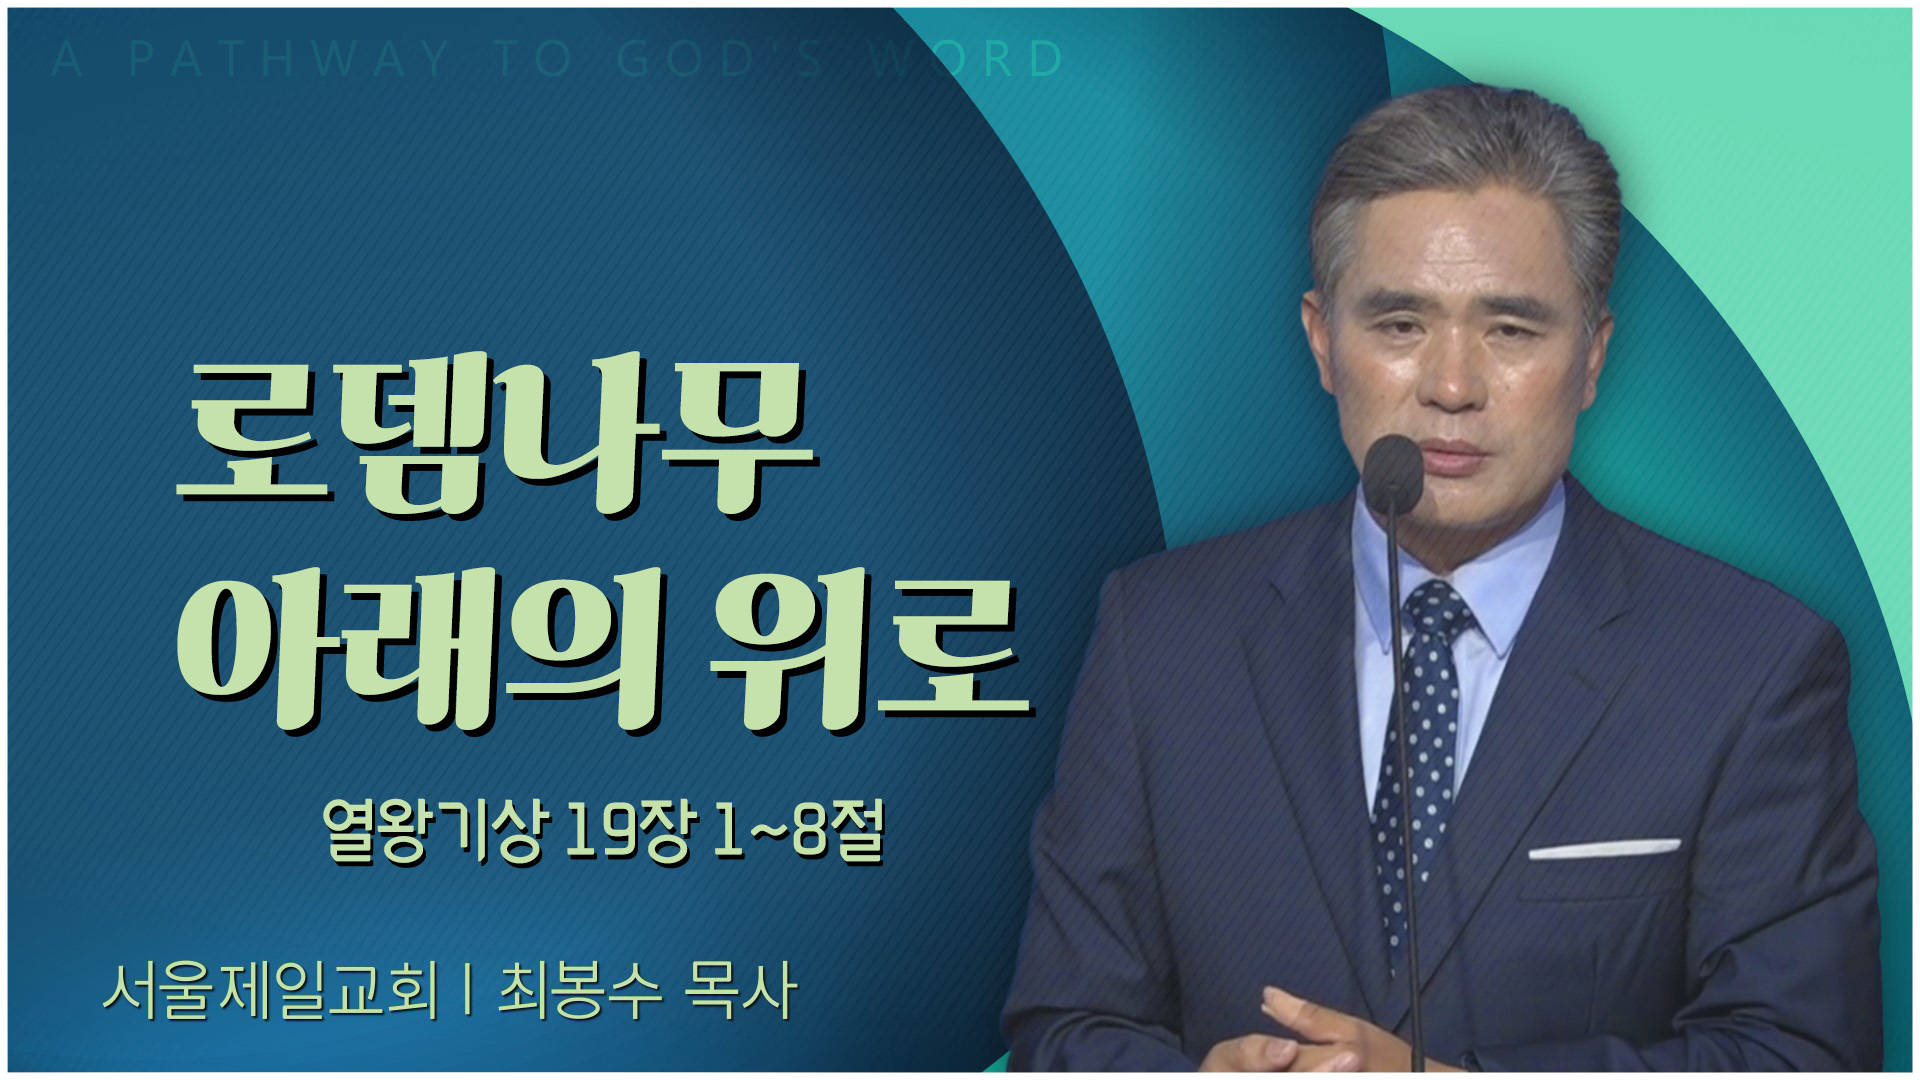 로뎀나무 아래의 위로┃서울제일교회 최봉수 목사	